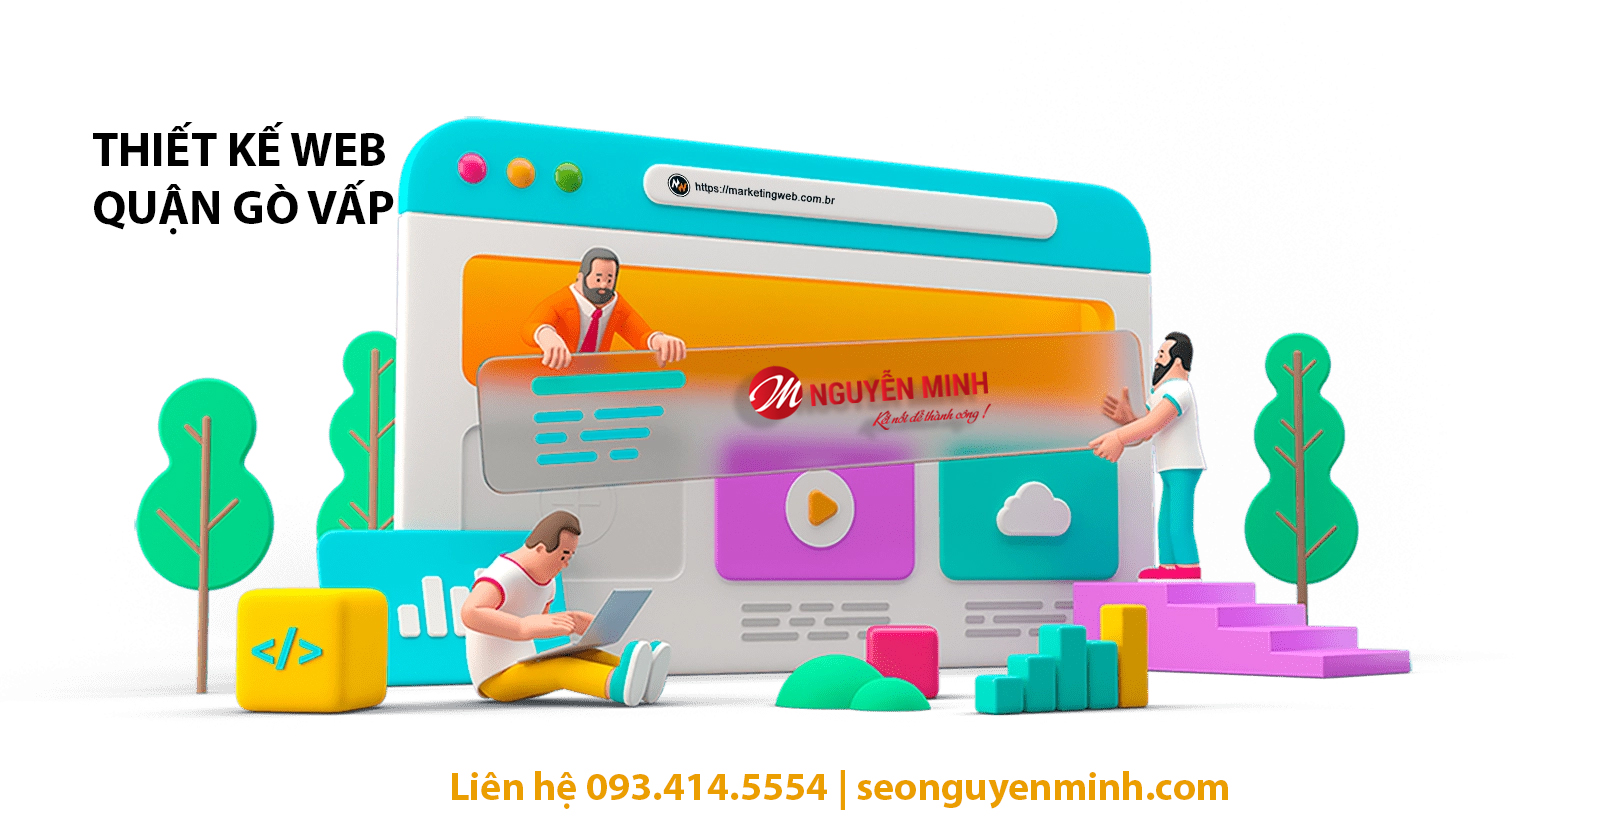 Thiết kế website quận gò vấp - Tư vấn miễn phí tận nơi - Nguyễn Minh